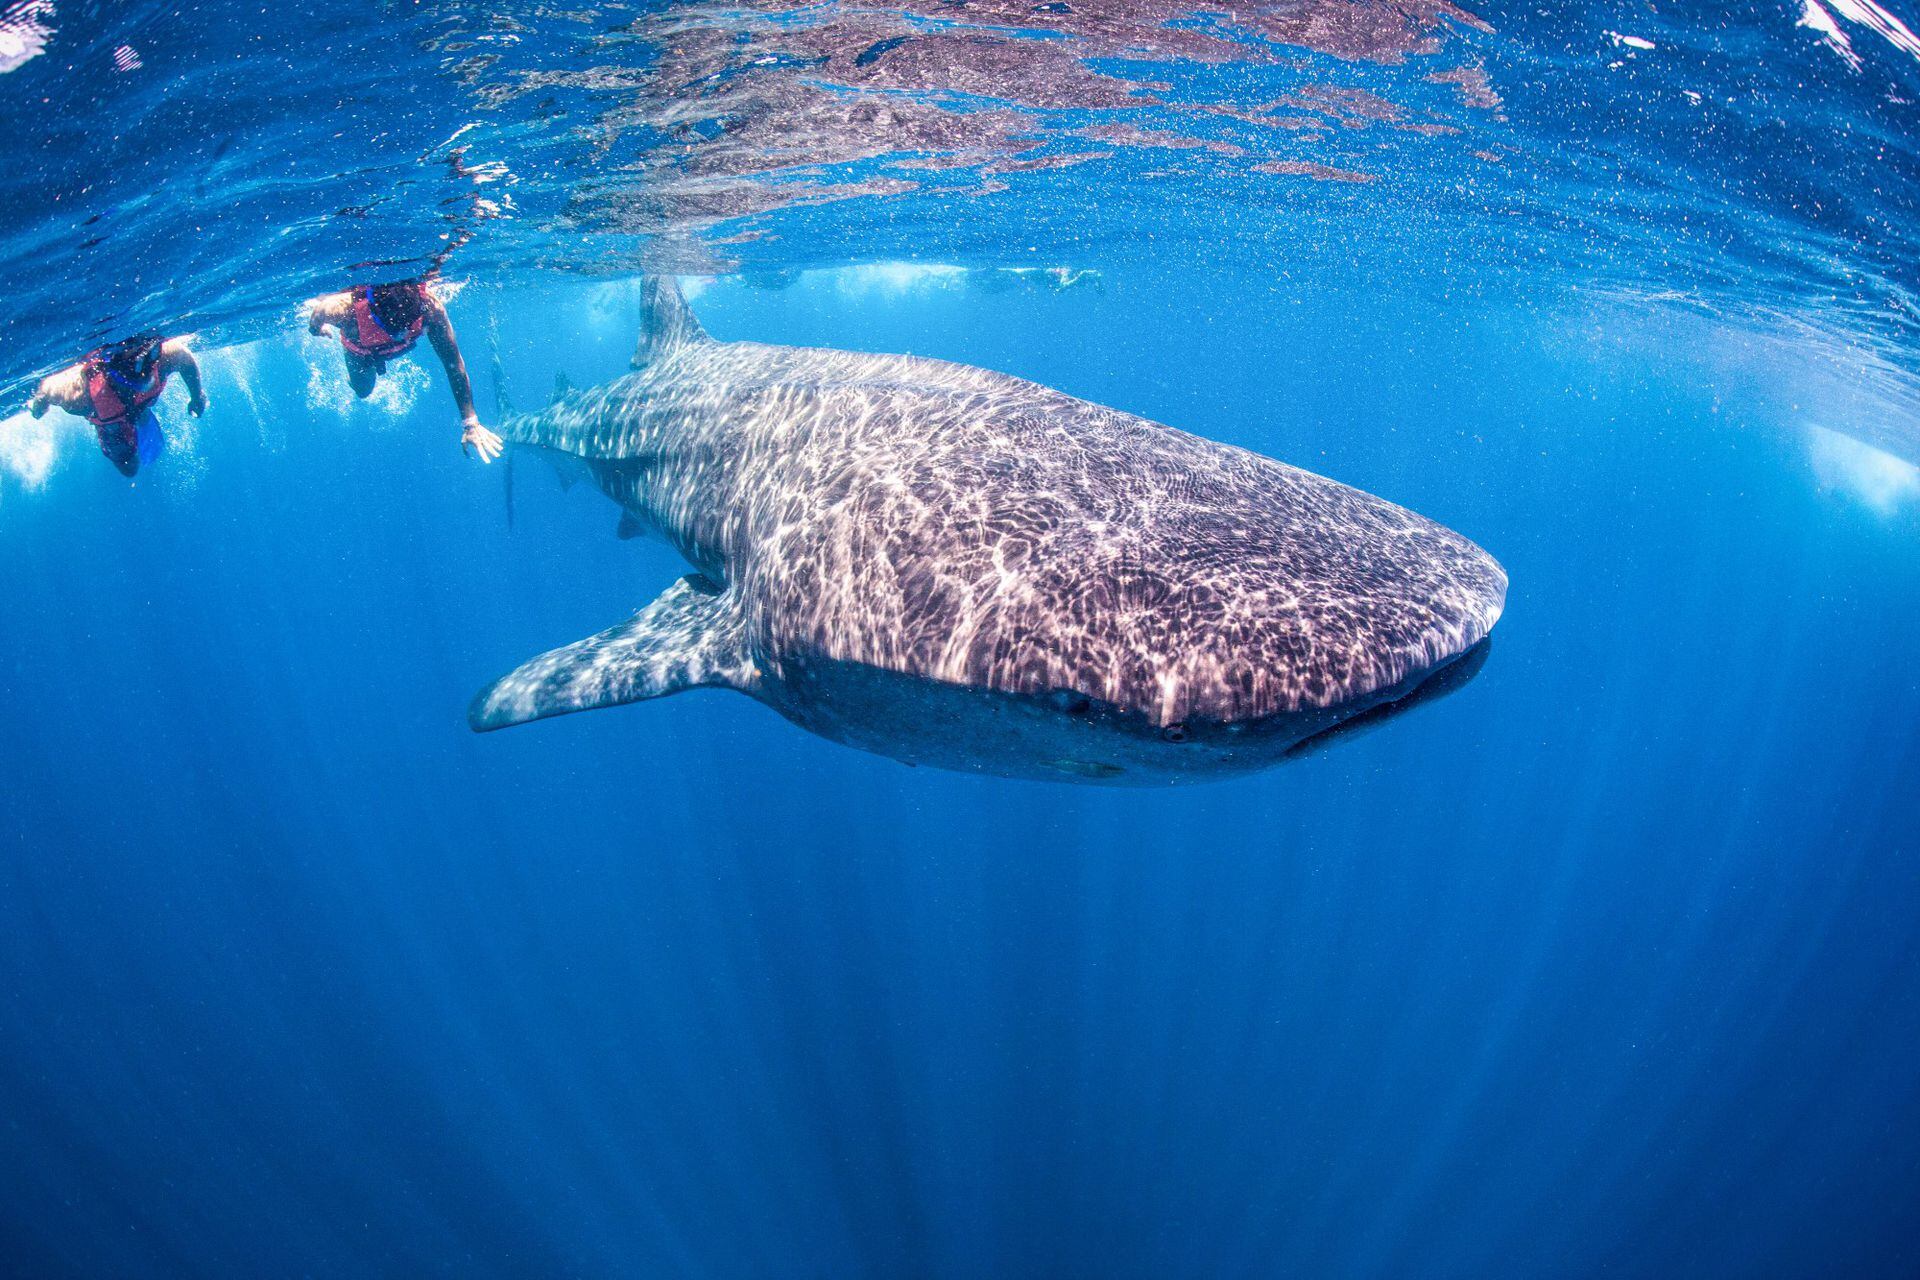 El principal atractivo de la isla es nadar junto al tiburón ballena, el pez más grande del océano.